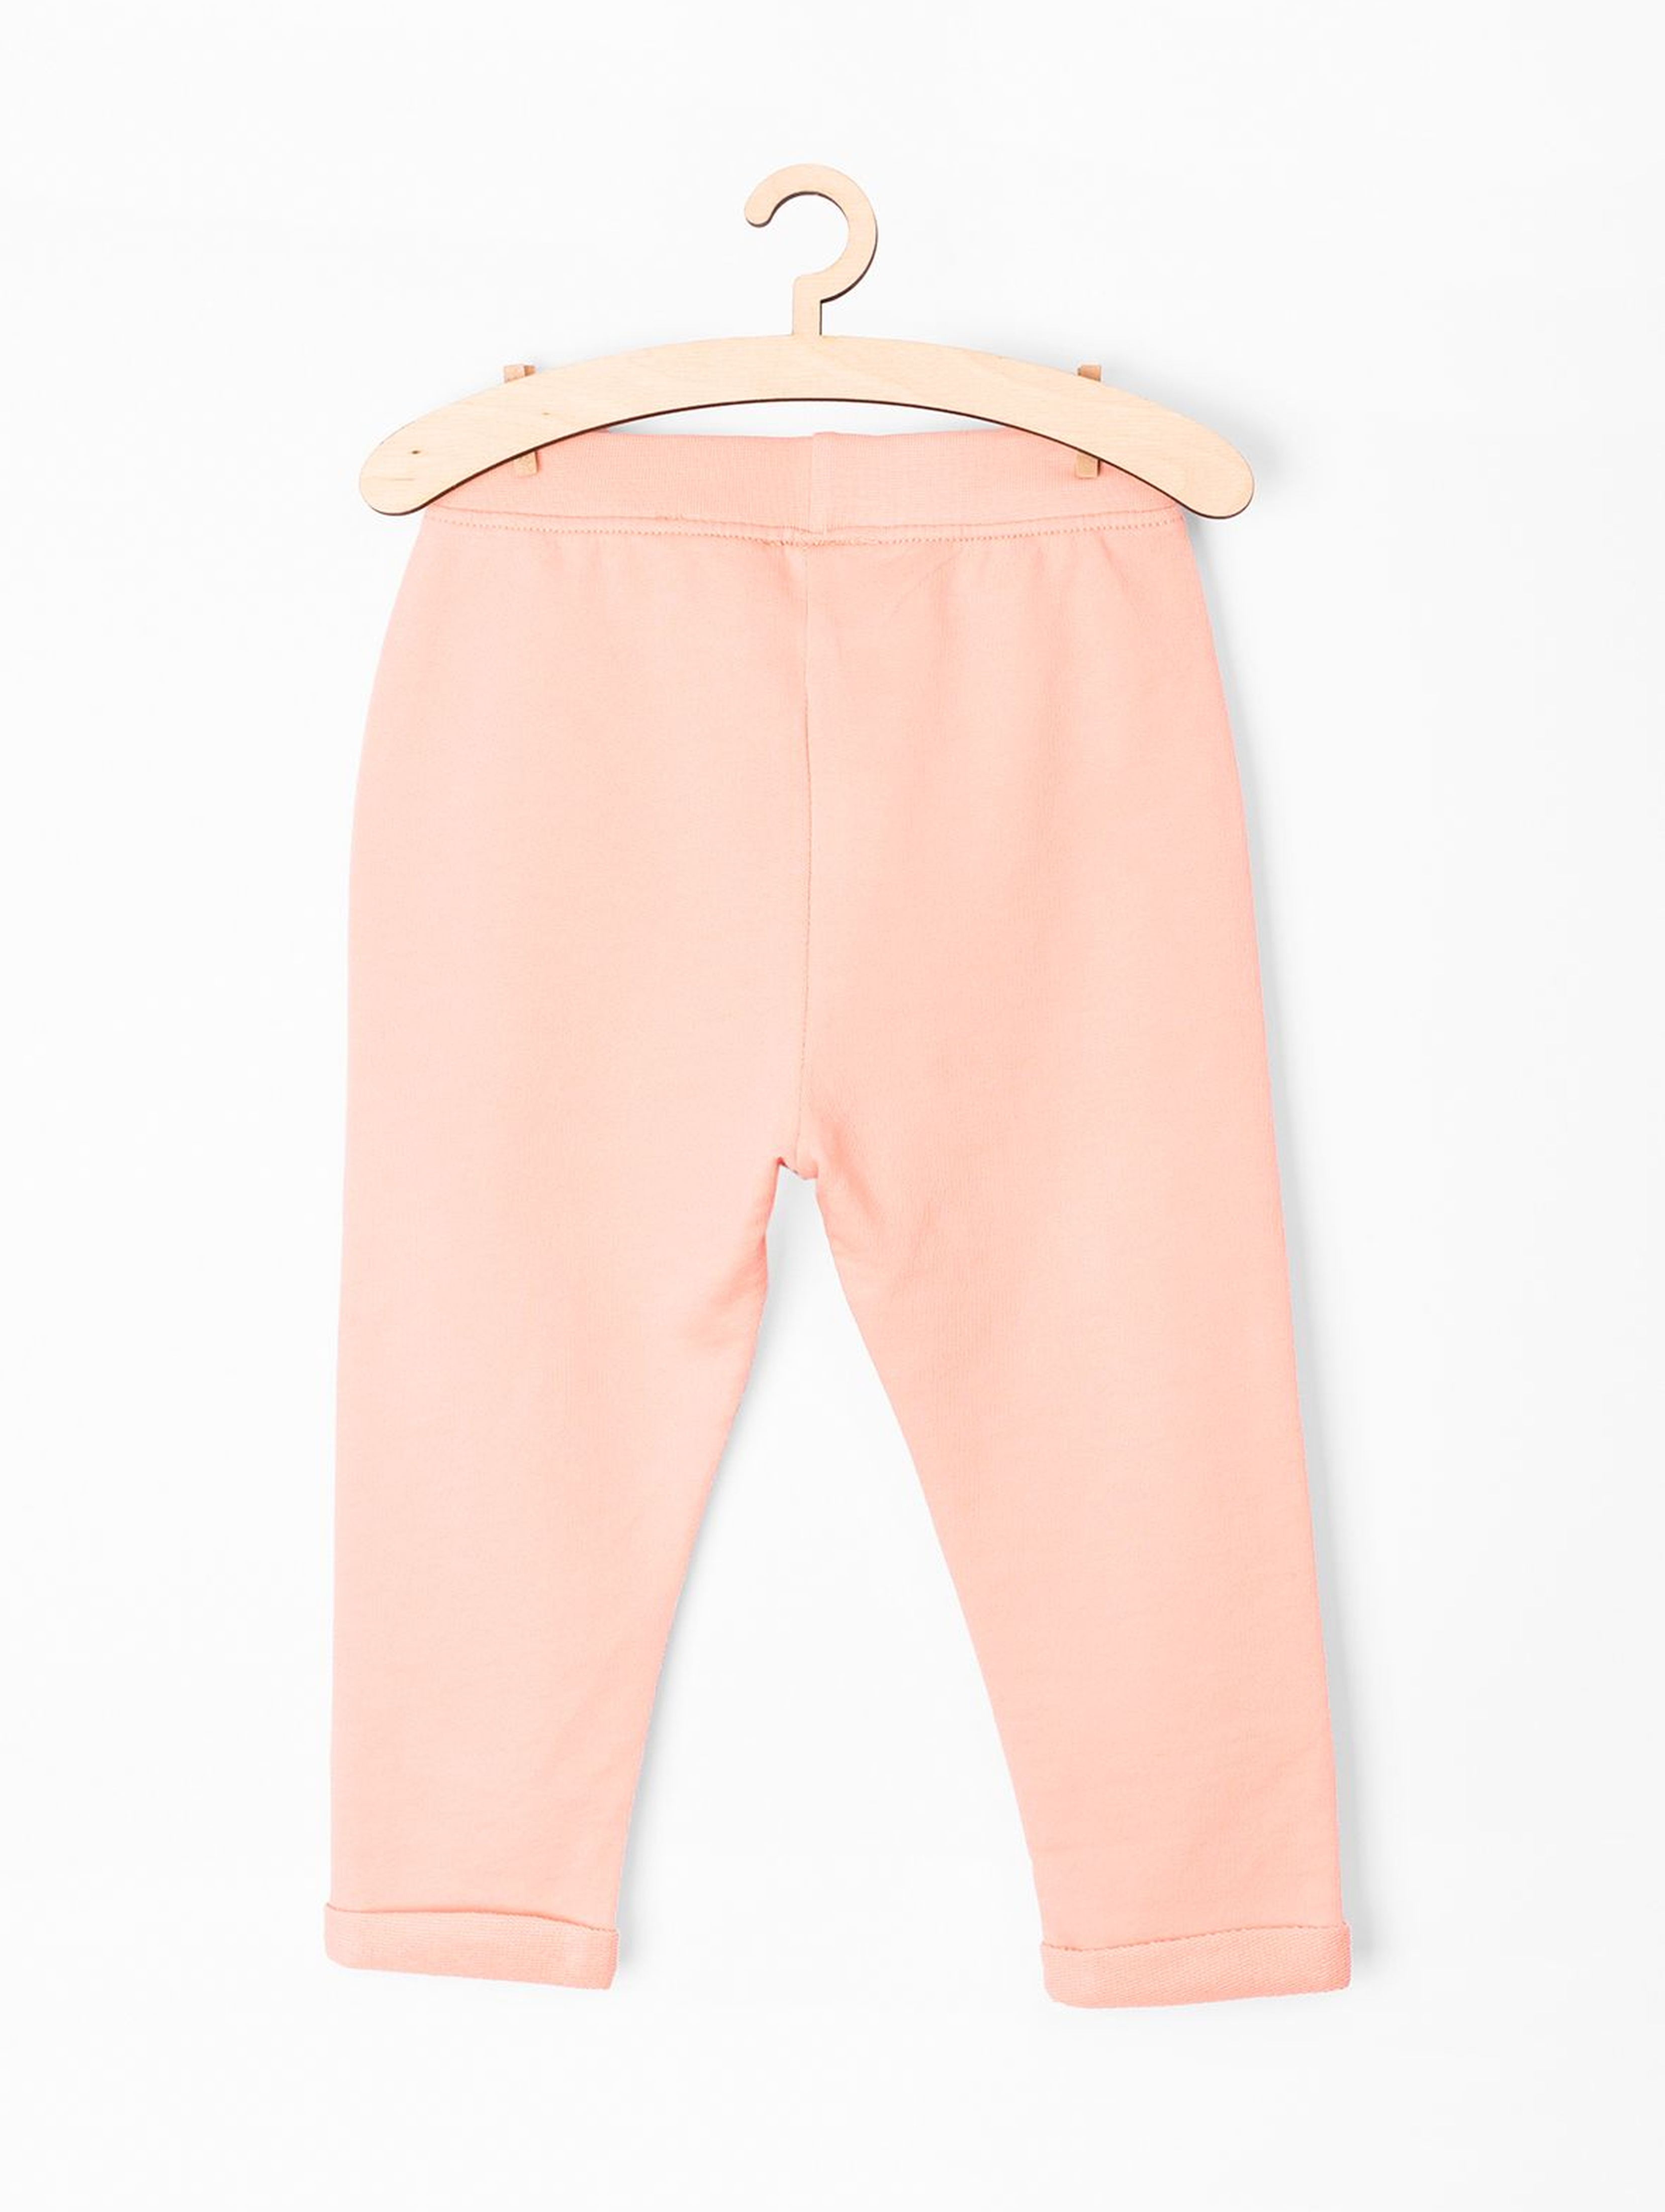 Spodnie dresowe niemowlęce- różowe z jednorożcem